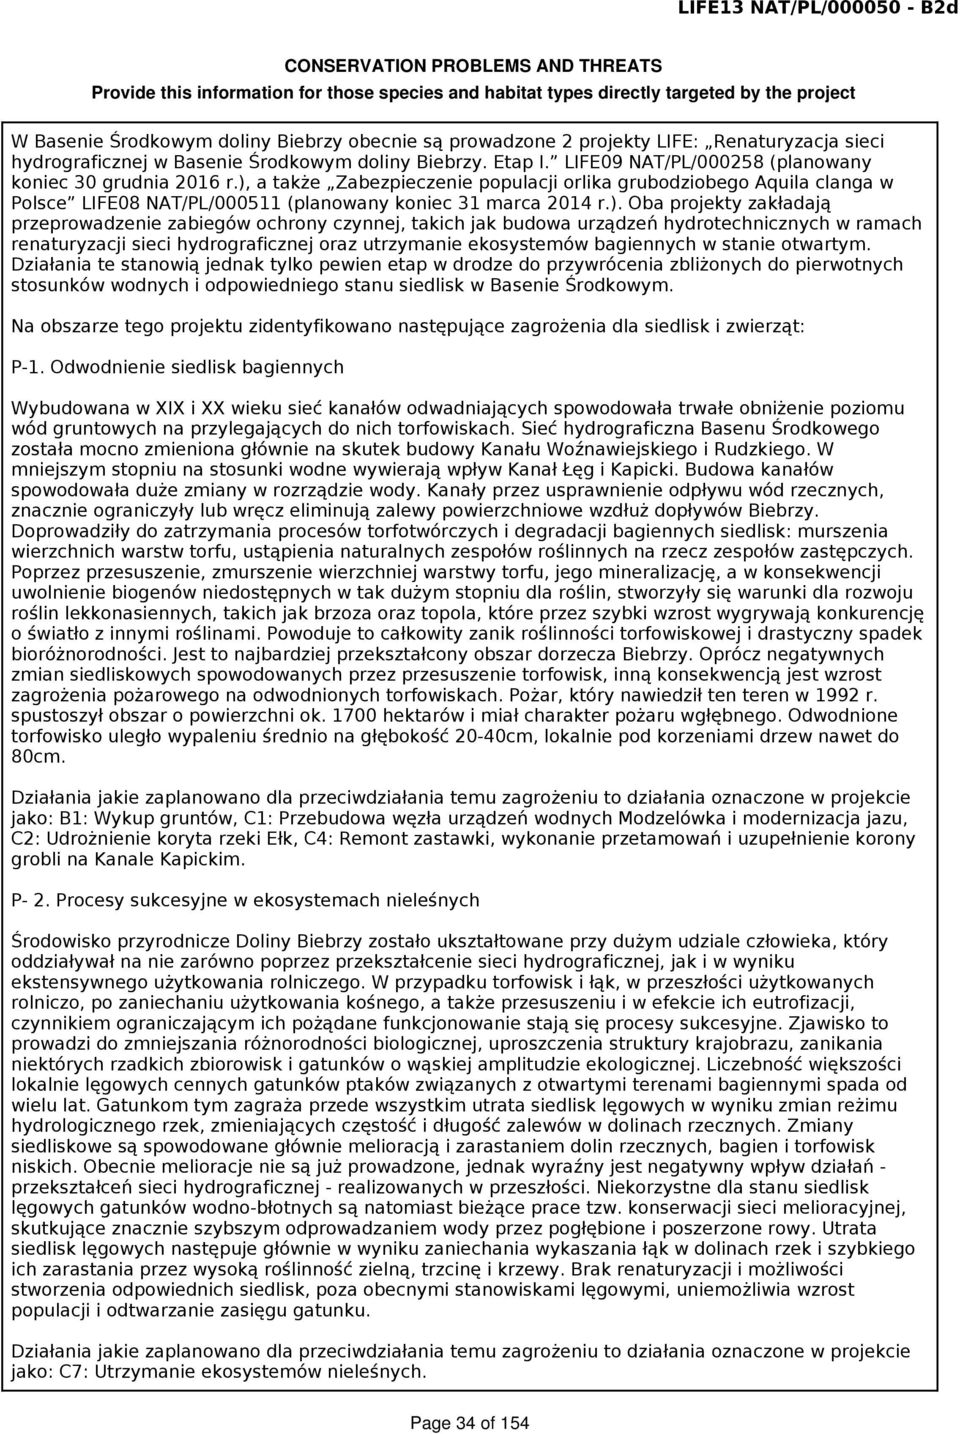 ), a także Zabezpieczenie populacji orlika grubodziobego Aquila clanga w Polsce LIFE08 NAT/PL/000511 (planowany koniec 31 marca 2014 r.). Oba projekty zakładają przeprowadzenie zabiegów ochrony